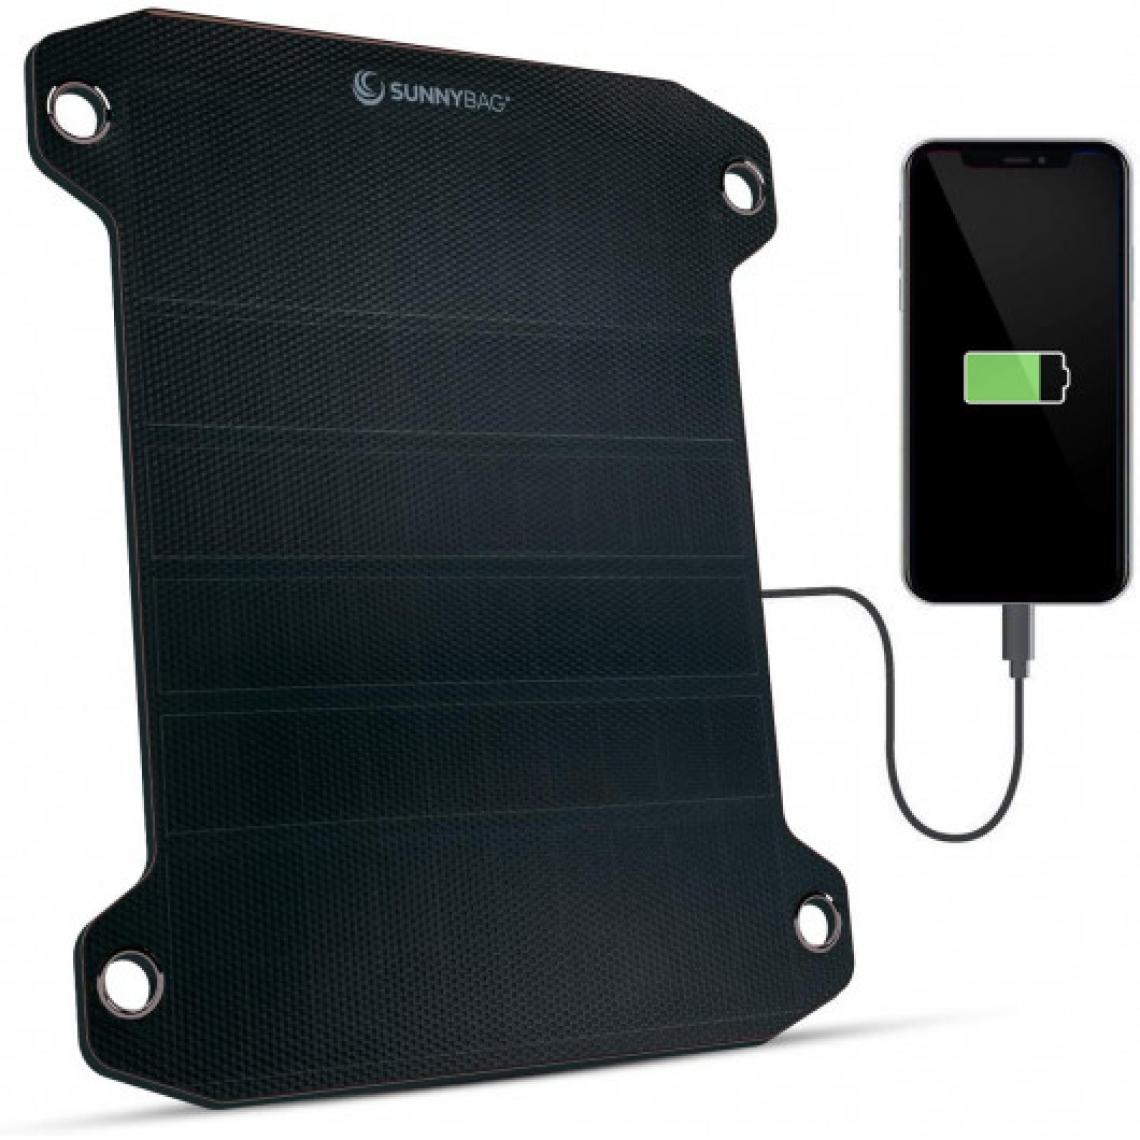 Ofs Selection - Sunnybag Leaf PRO 0001, le panneau solaire portable - Caméra de surveillance connectée